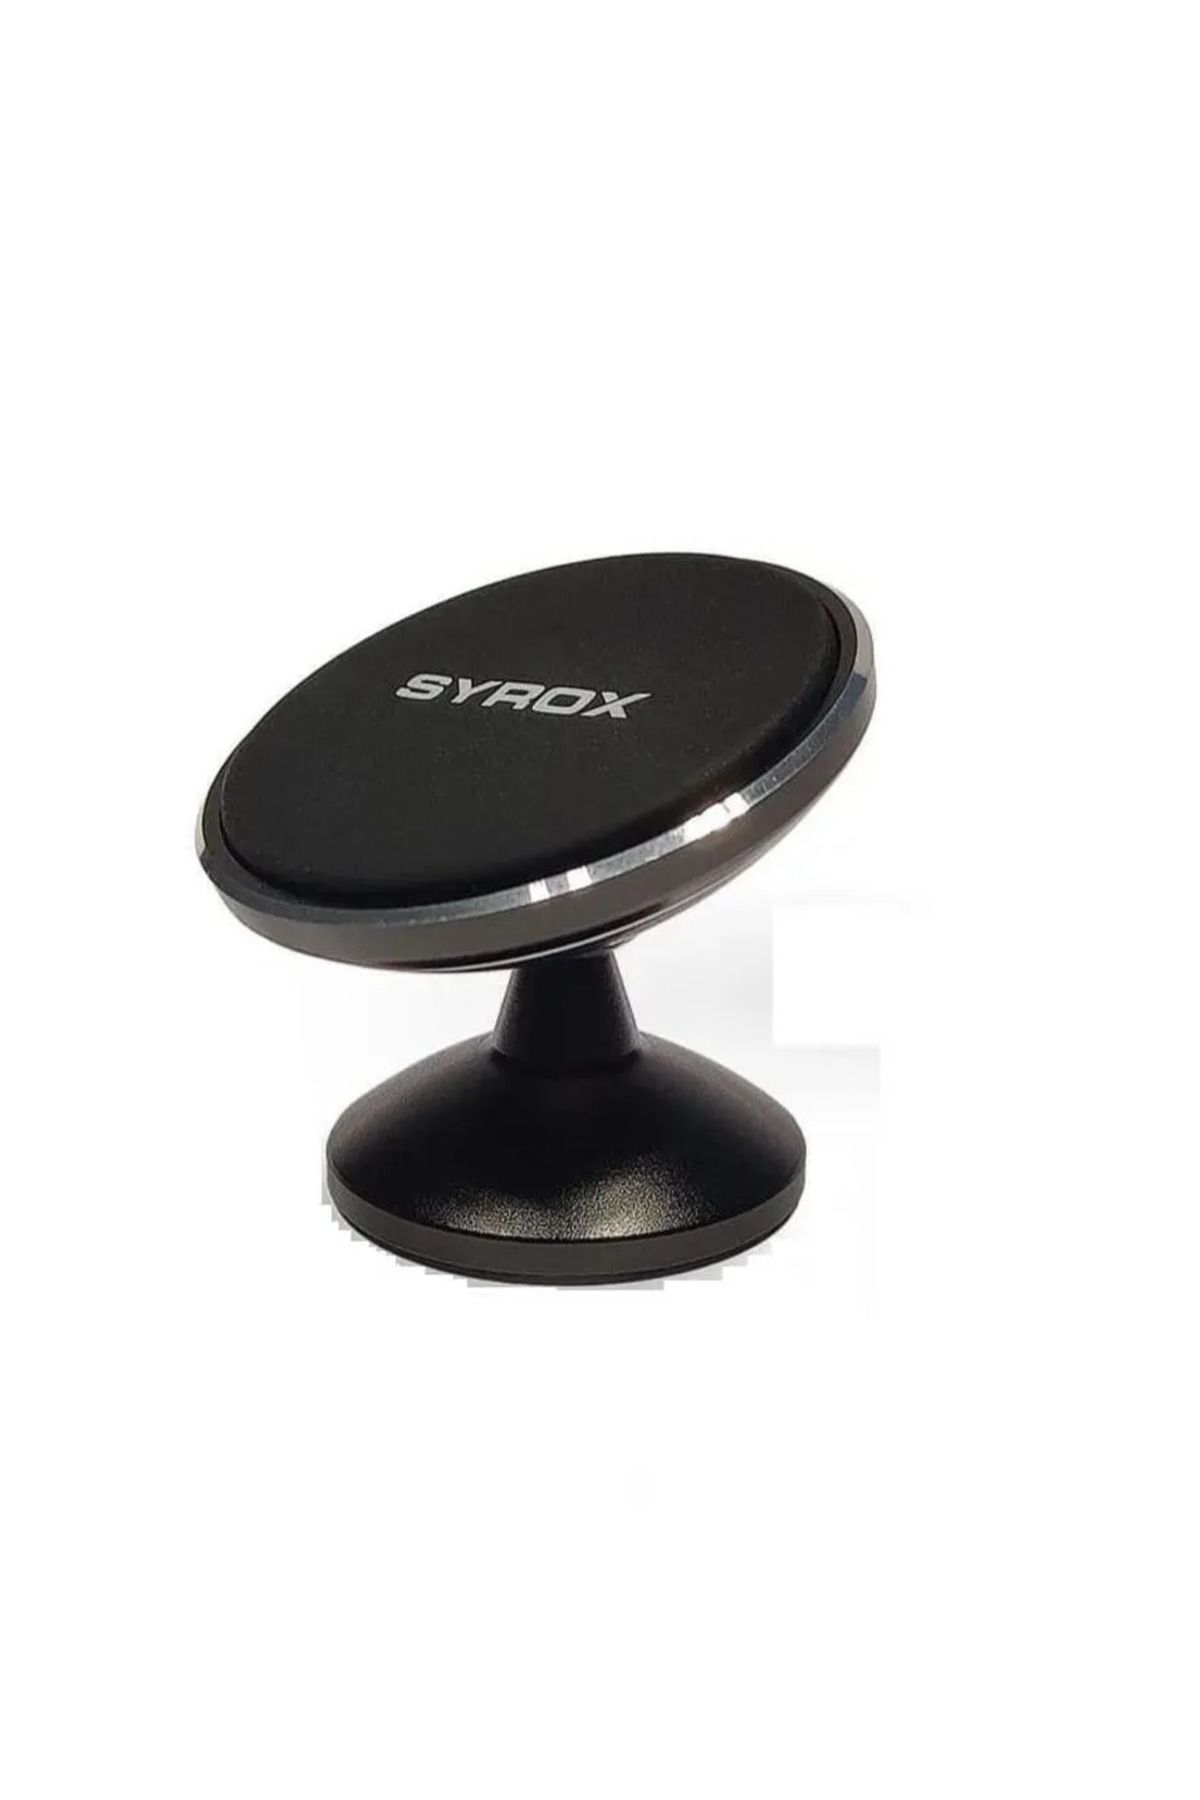 Syrox Ph34 Premium Mıknatıslı Araç Tutucu